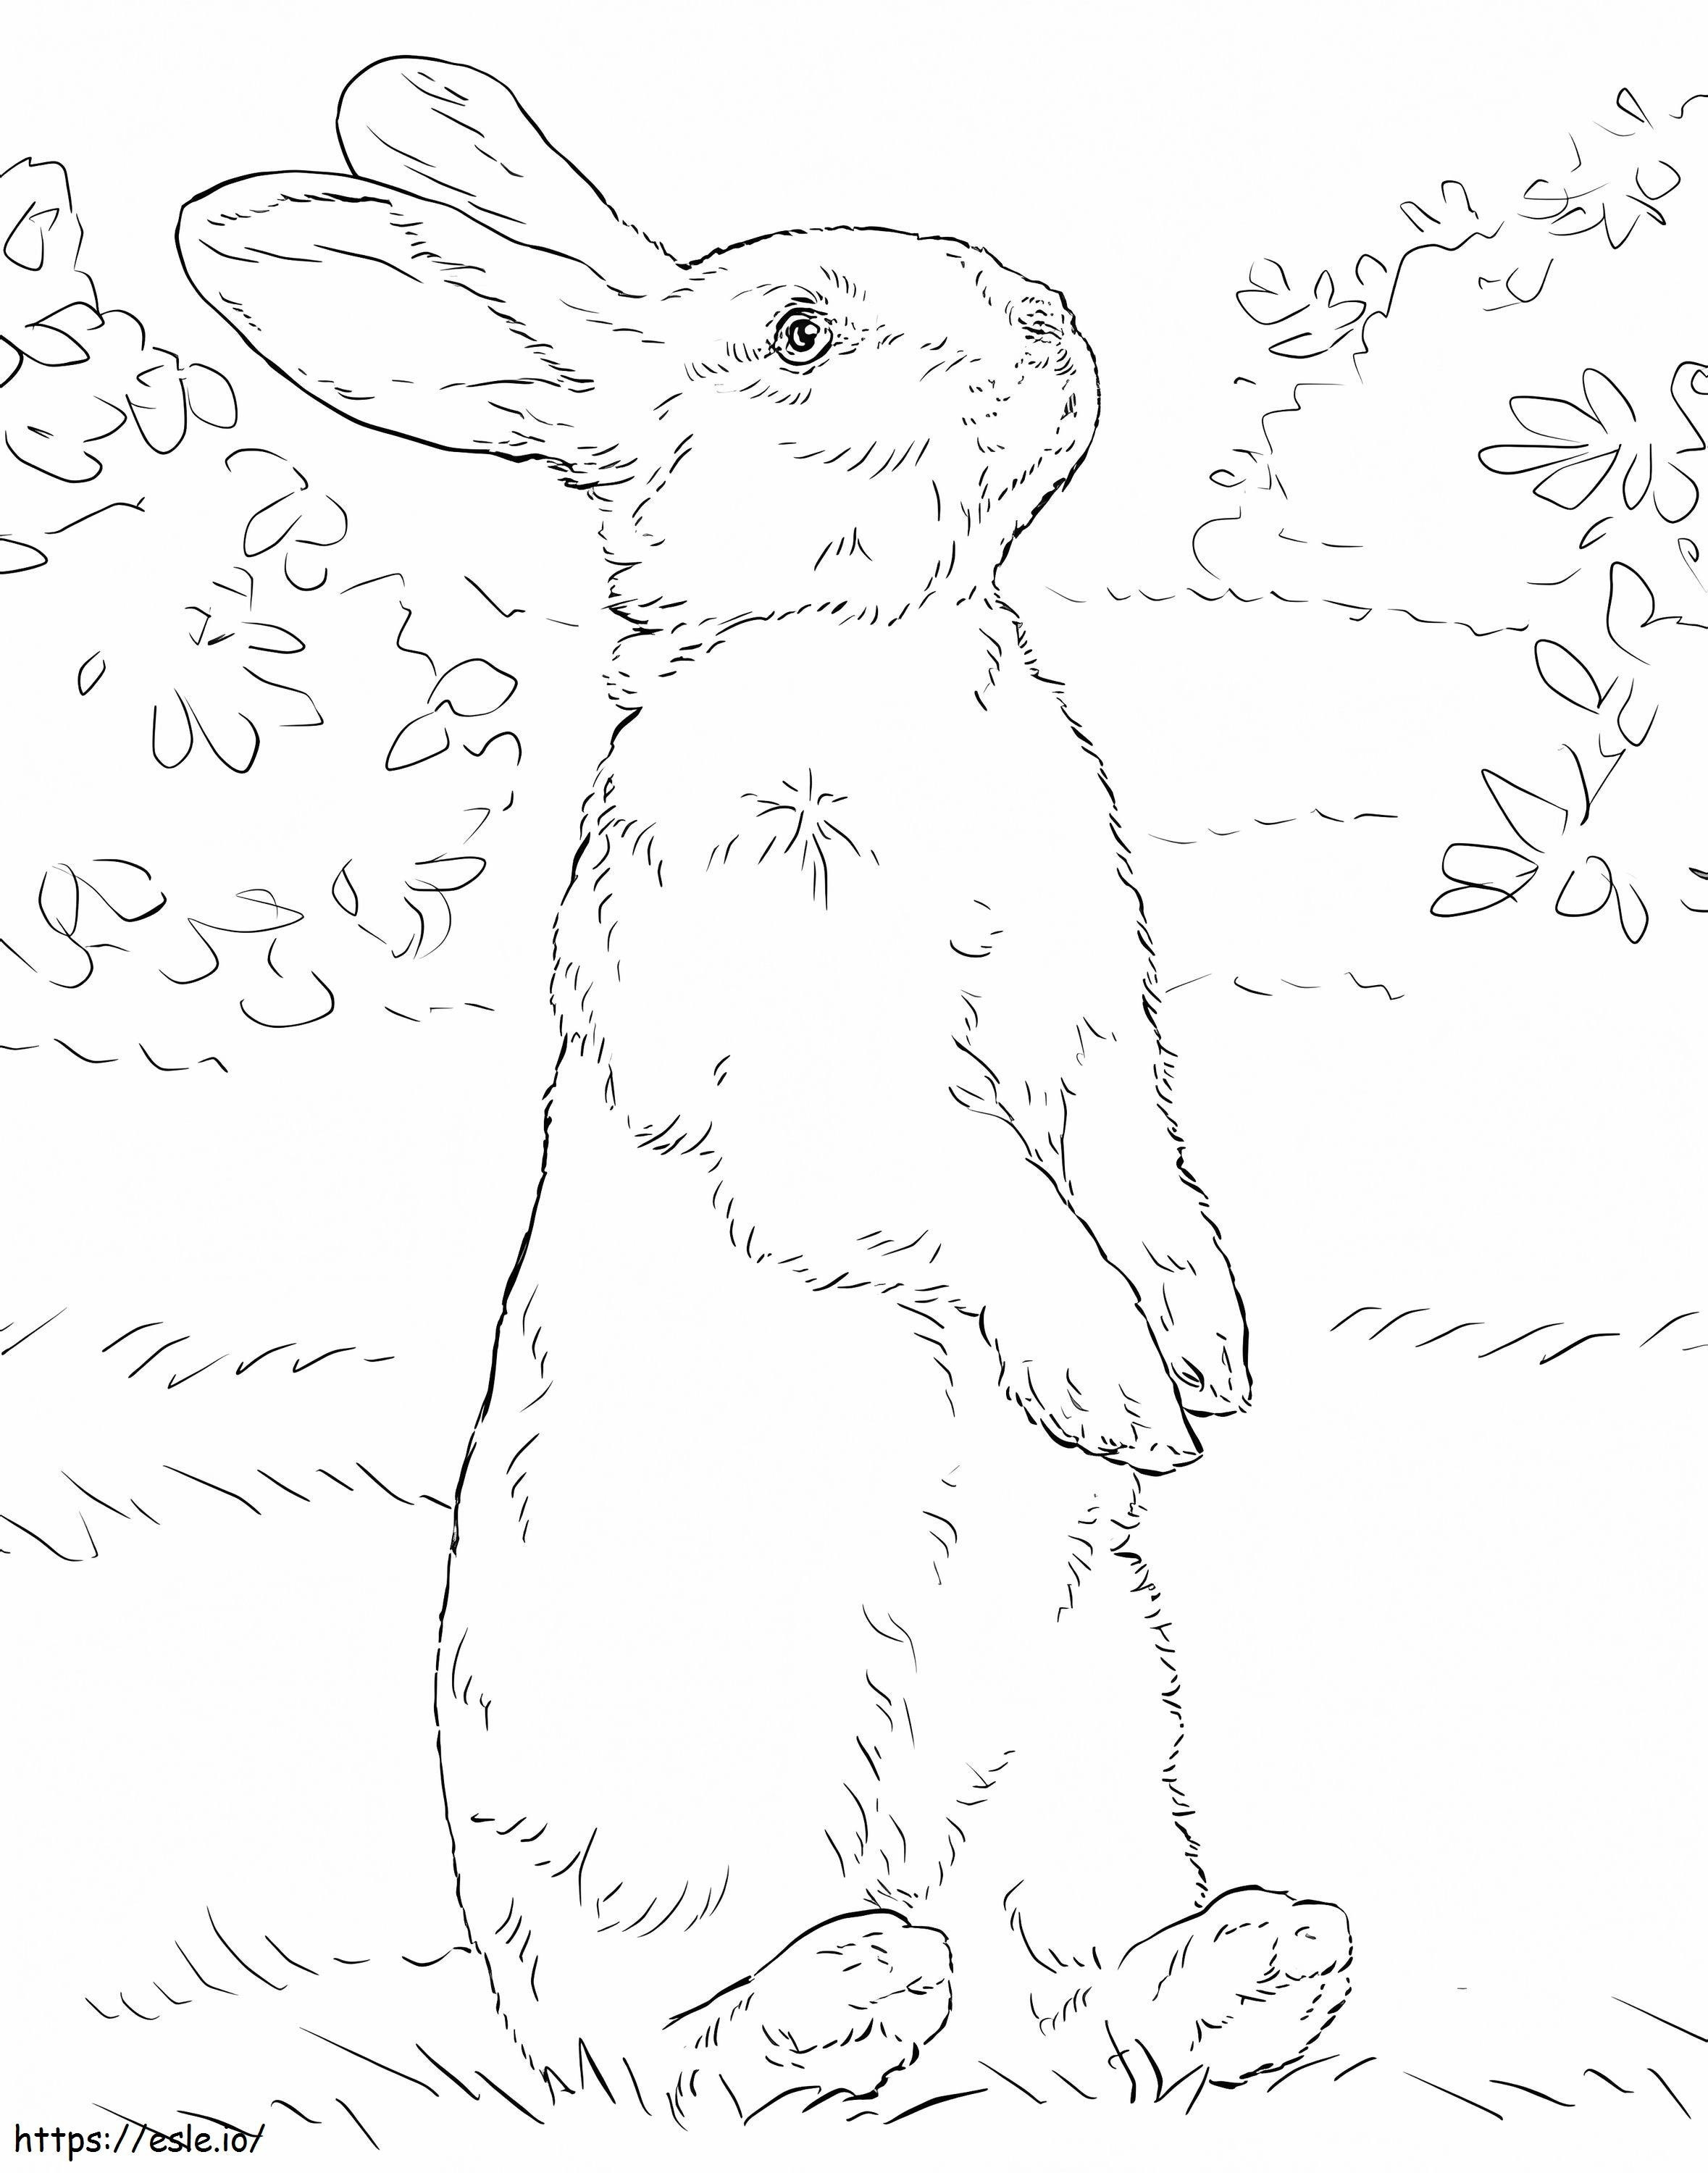 Arka ayakları üzerinde duran beyaz tavşan boyama